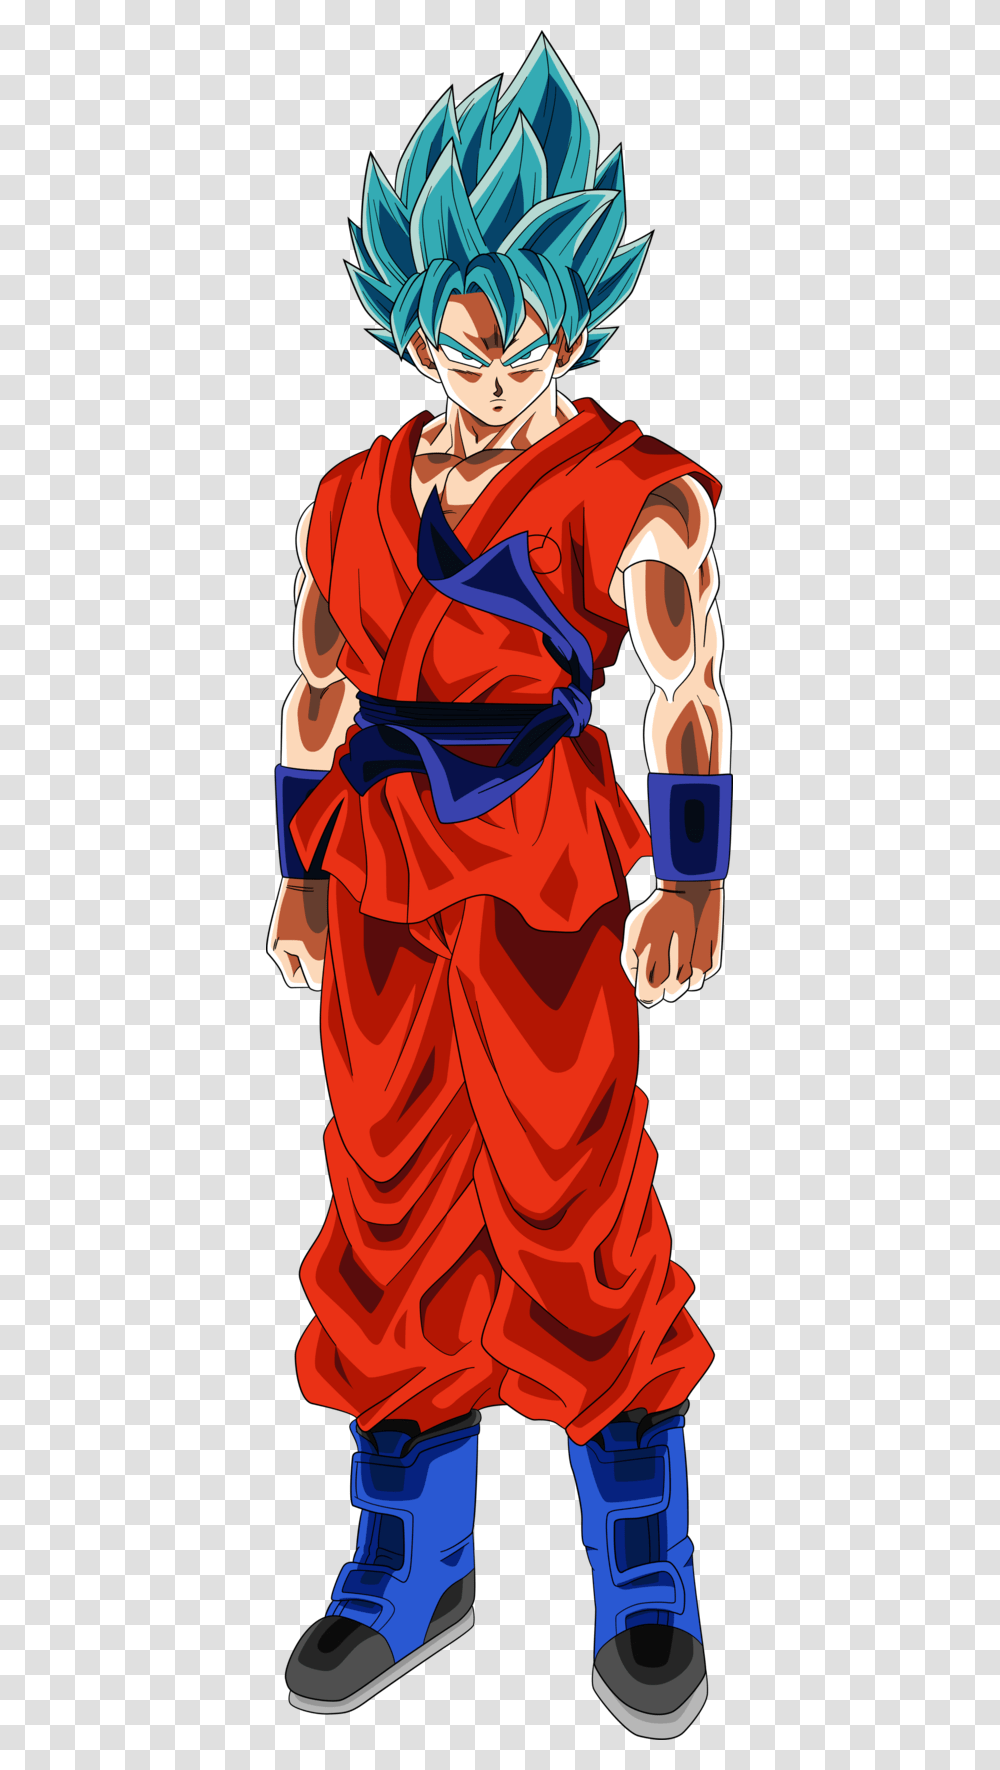 Super Saiyan God Super Saiyan Goku From Resurrection Goku Super Sayajin Blue, Apparel, Person, Human Transparent Png